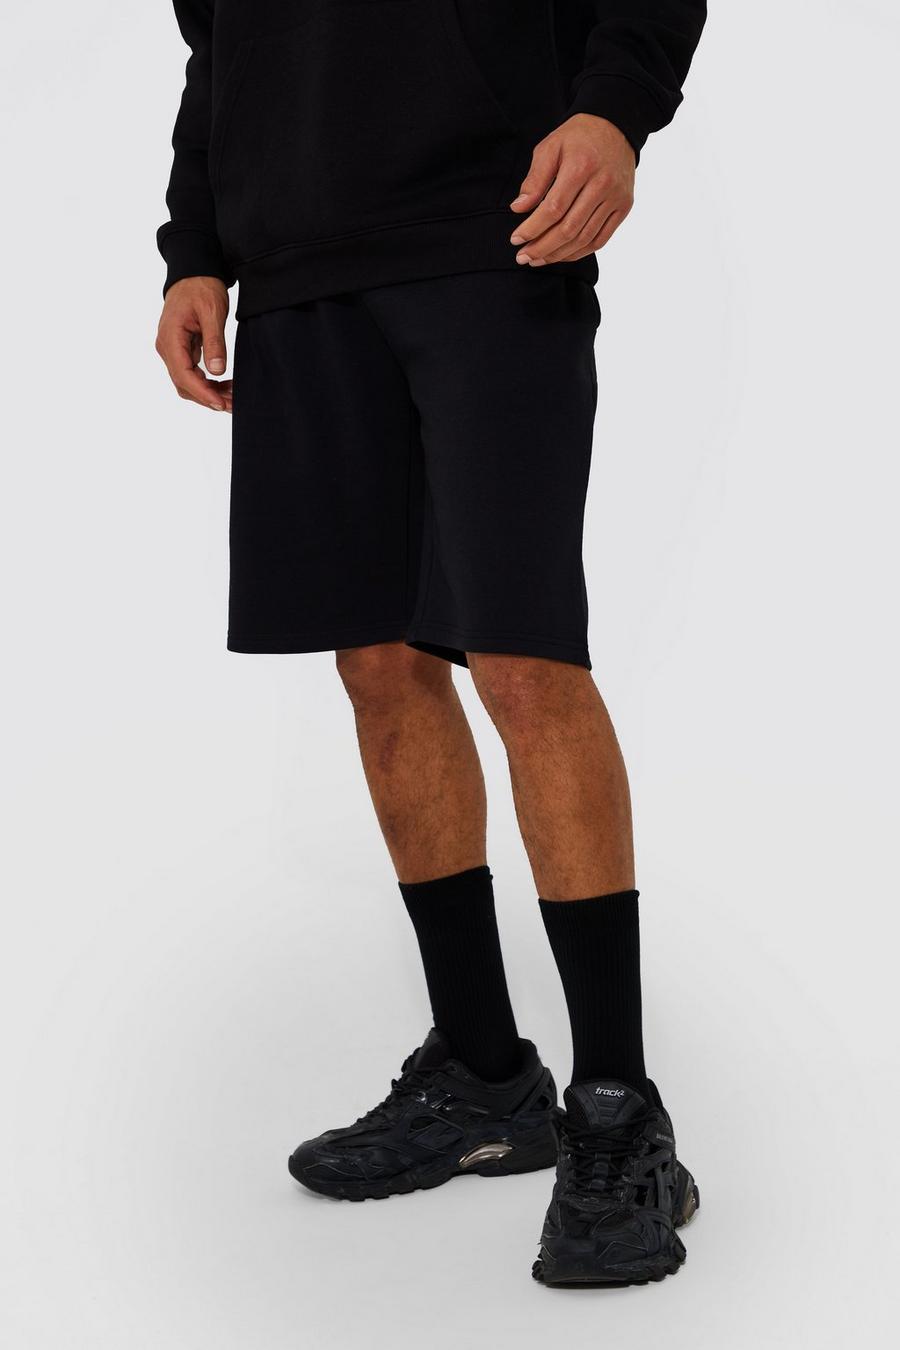 Pantalón corto Tall de largo medio y tela jersey con algodón ecológico, Black negro